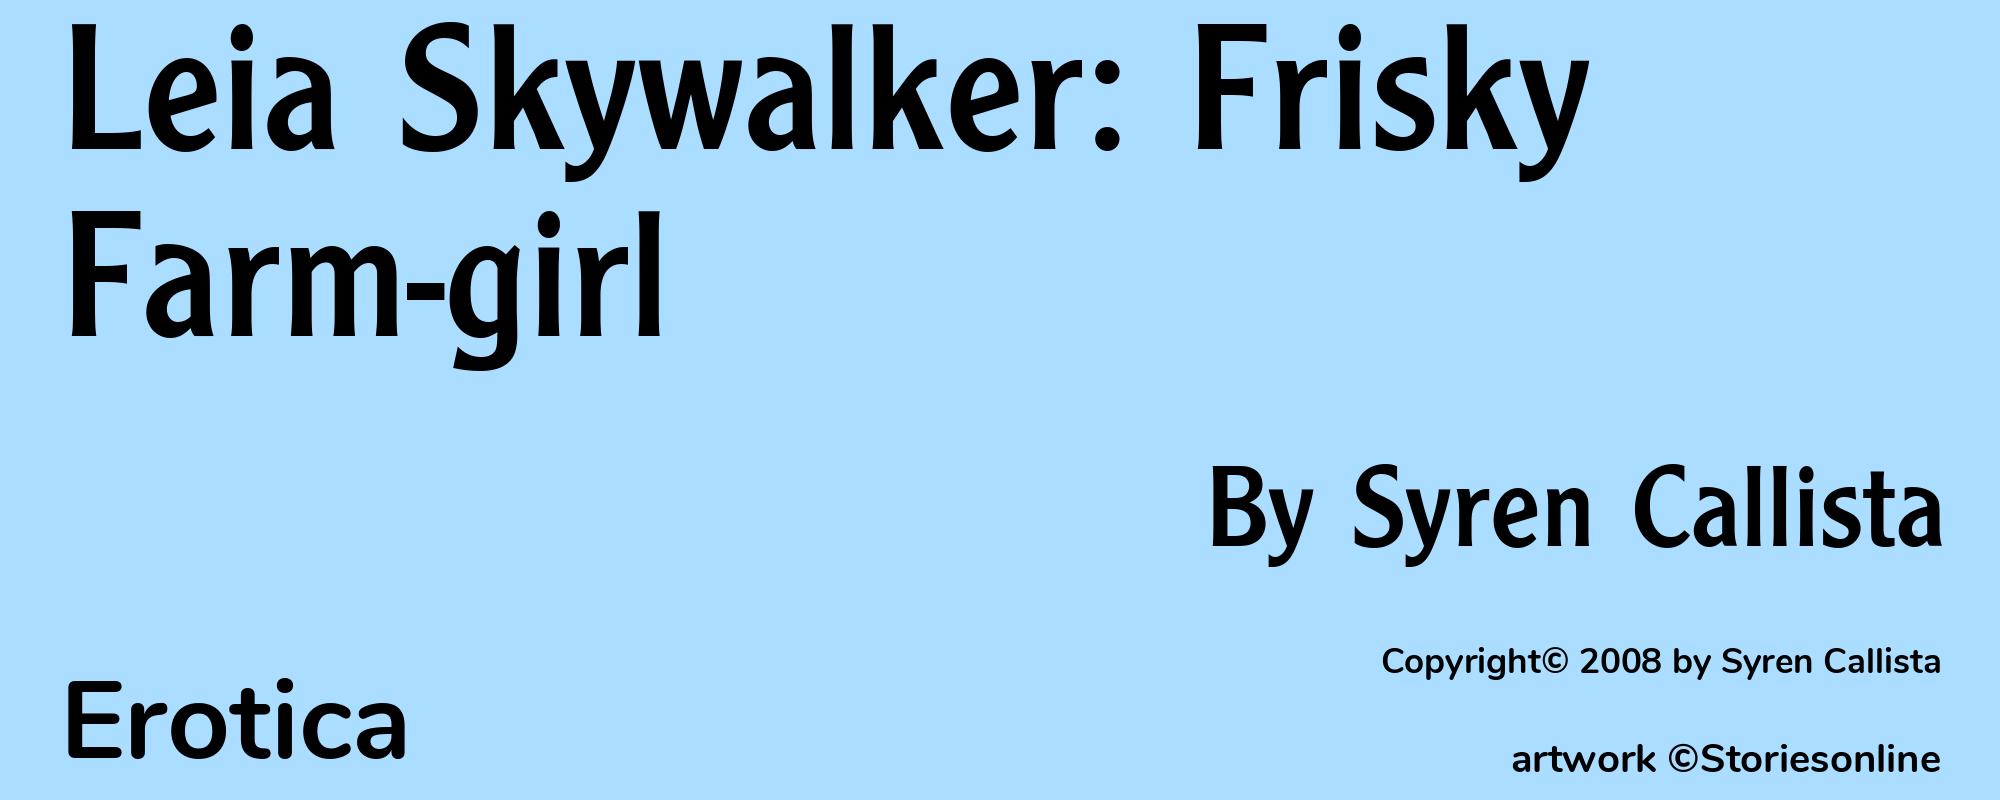 Leia Skywalker: Frisky Farm-girl - Cover